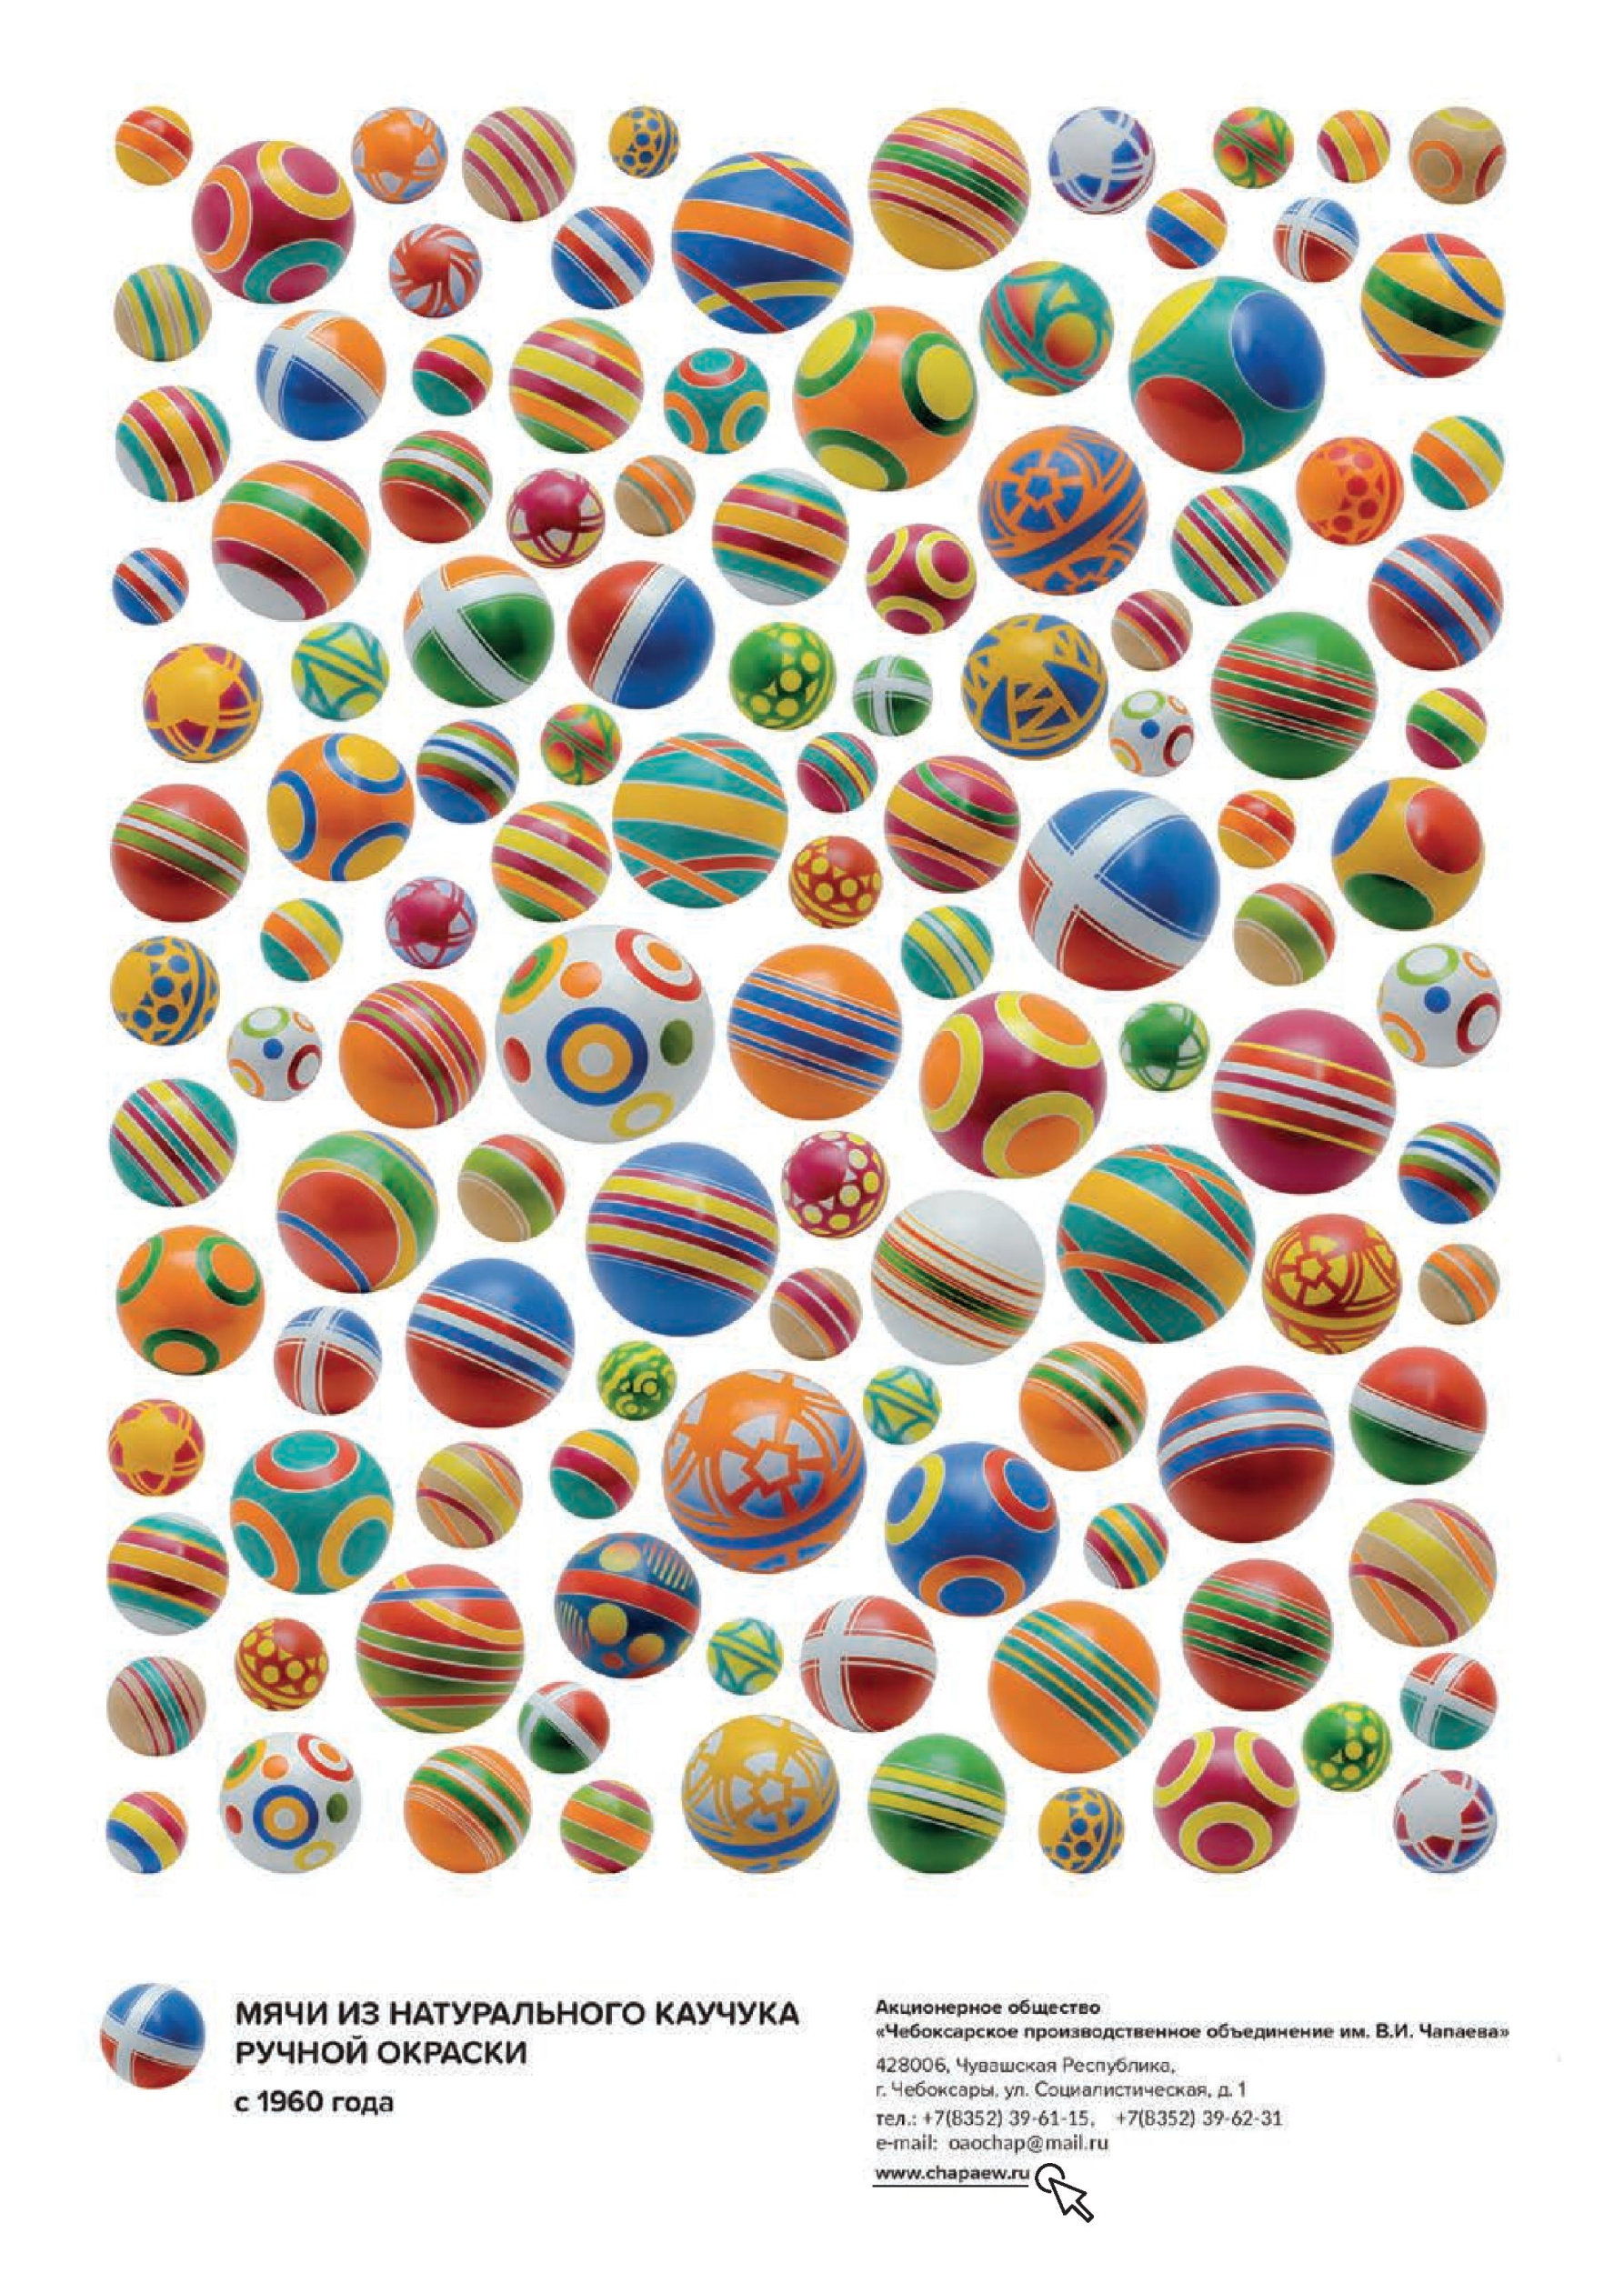 Мячи из натурального каучука ручной окраски